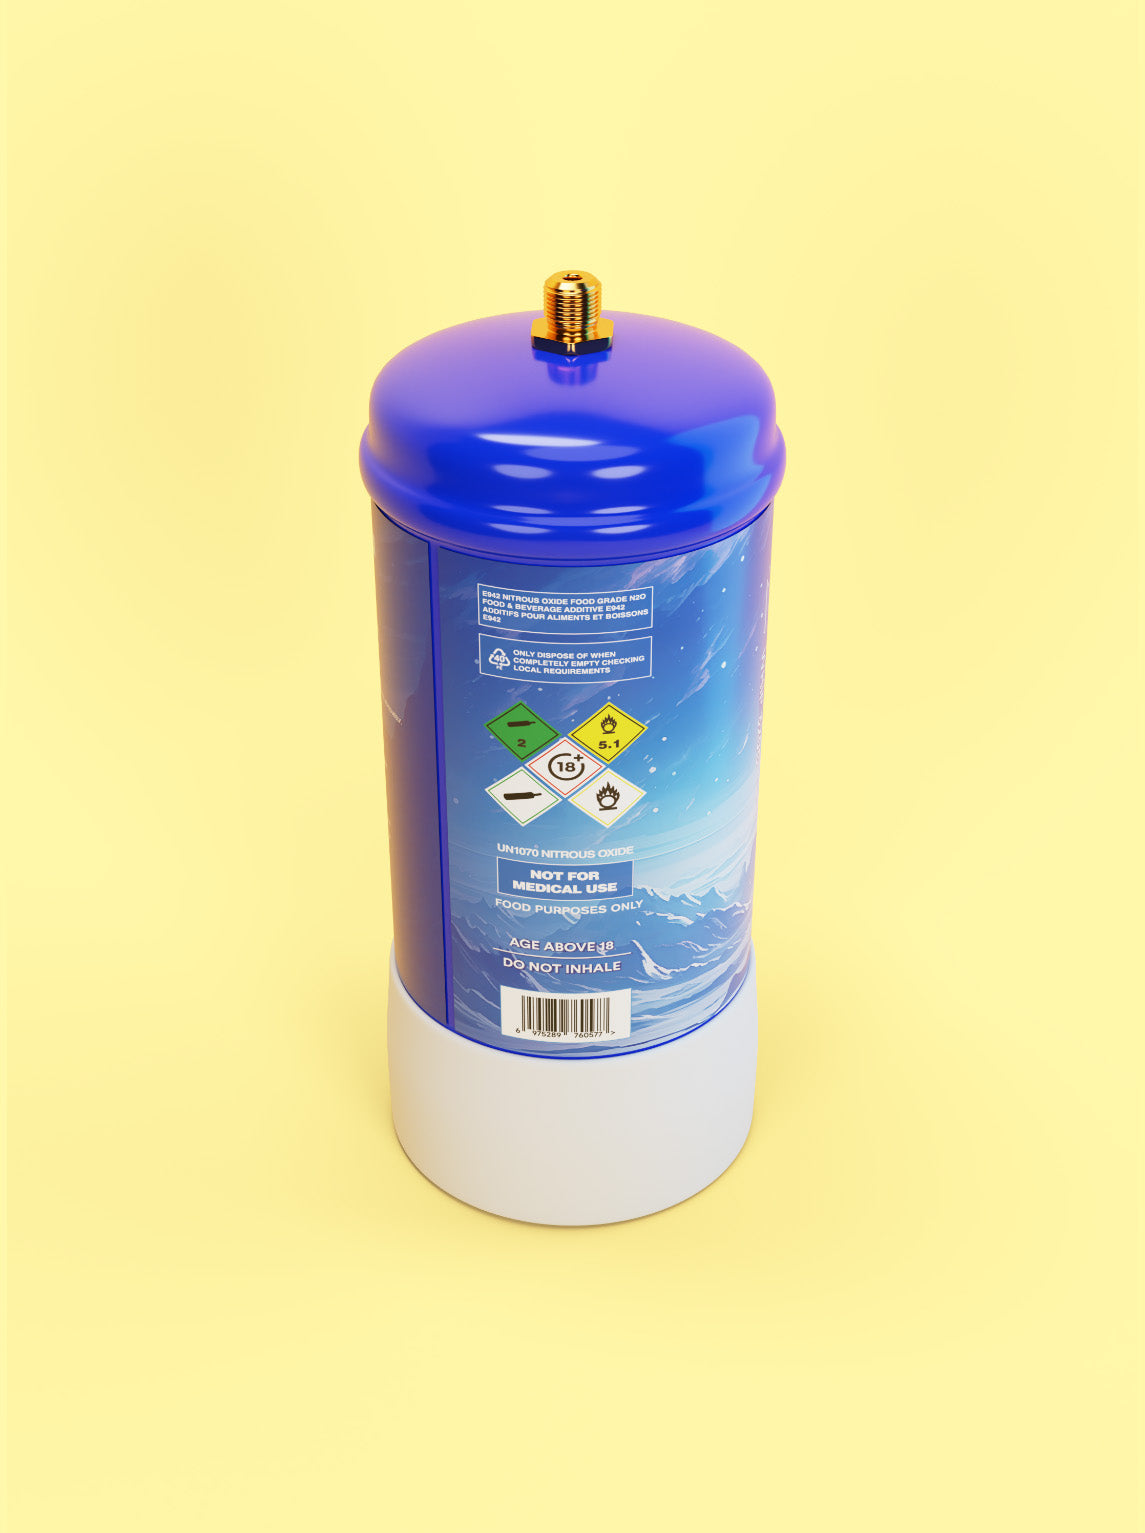 Rückansicht von oben: Die Gasflasche ist im Antarktis-Style designed, mit dem weißen Logo "Rotass" 320g. Der Hintergrund ist hellgelb.